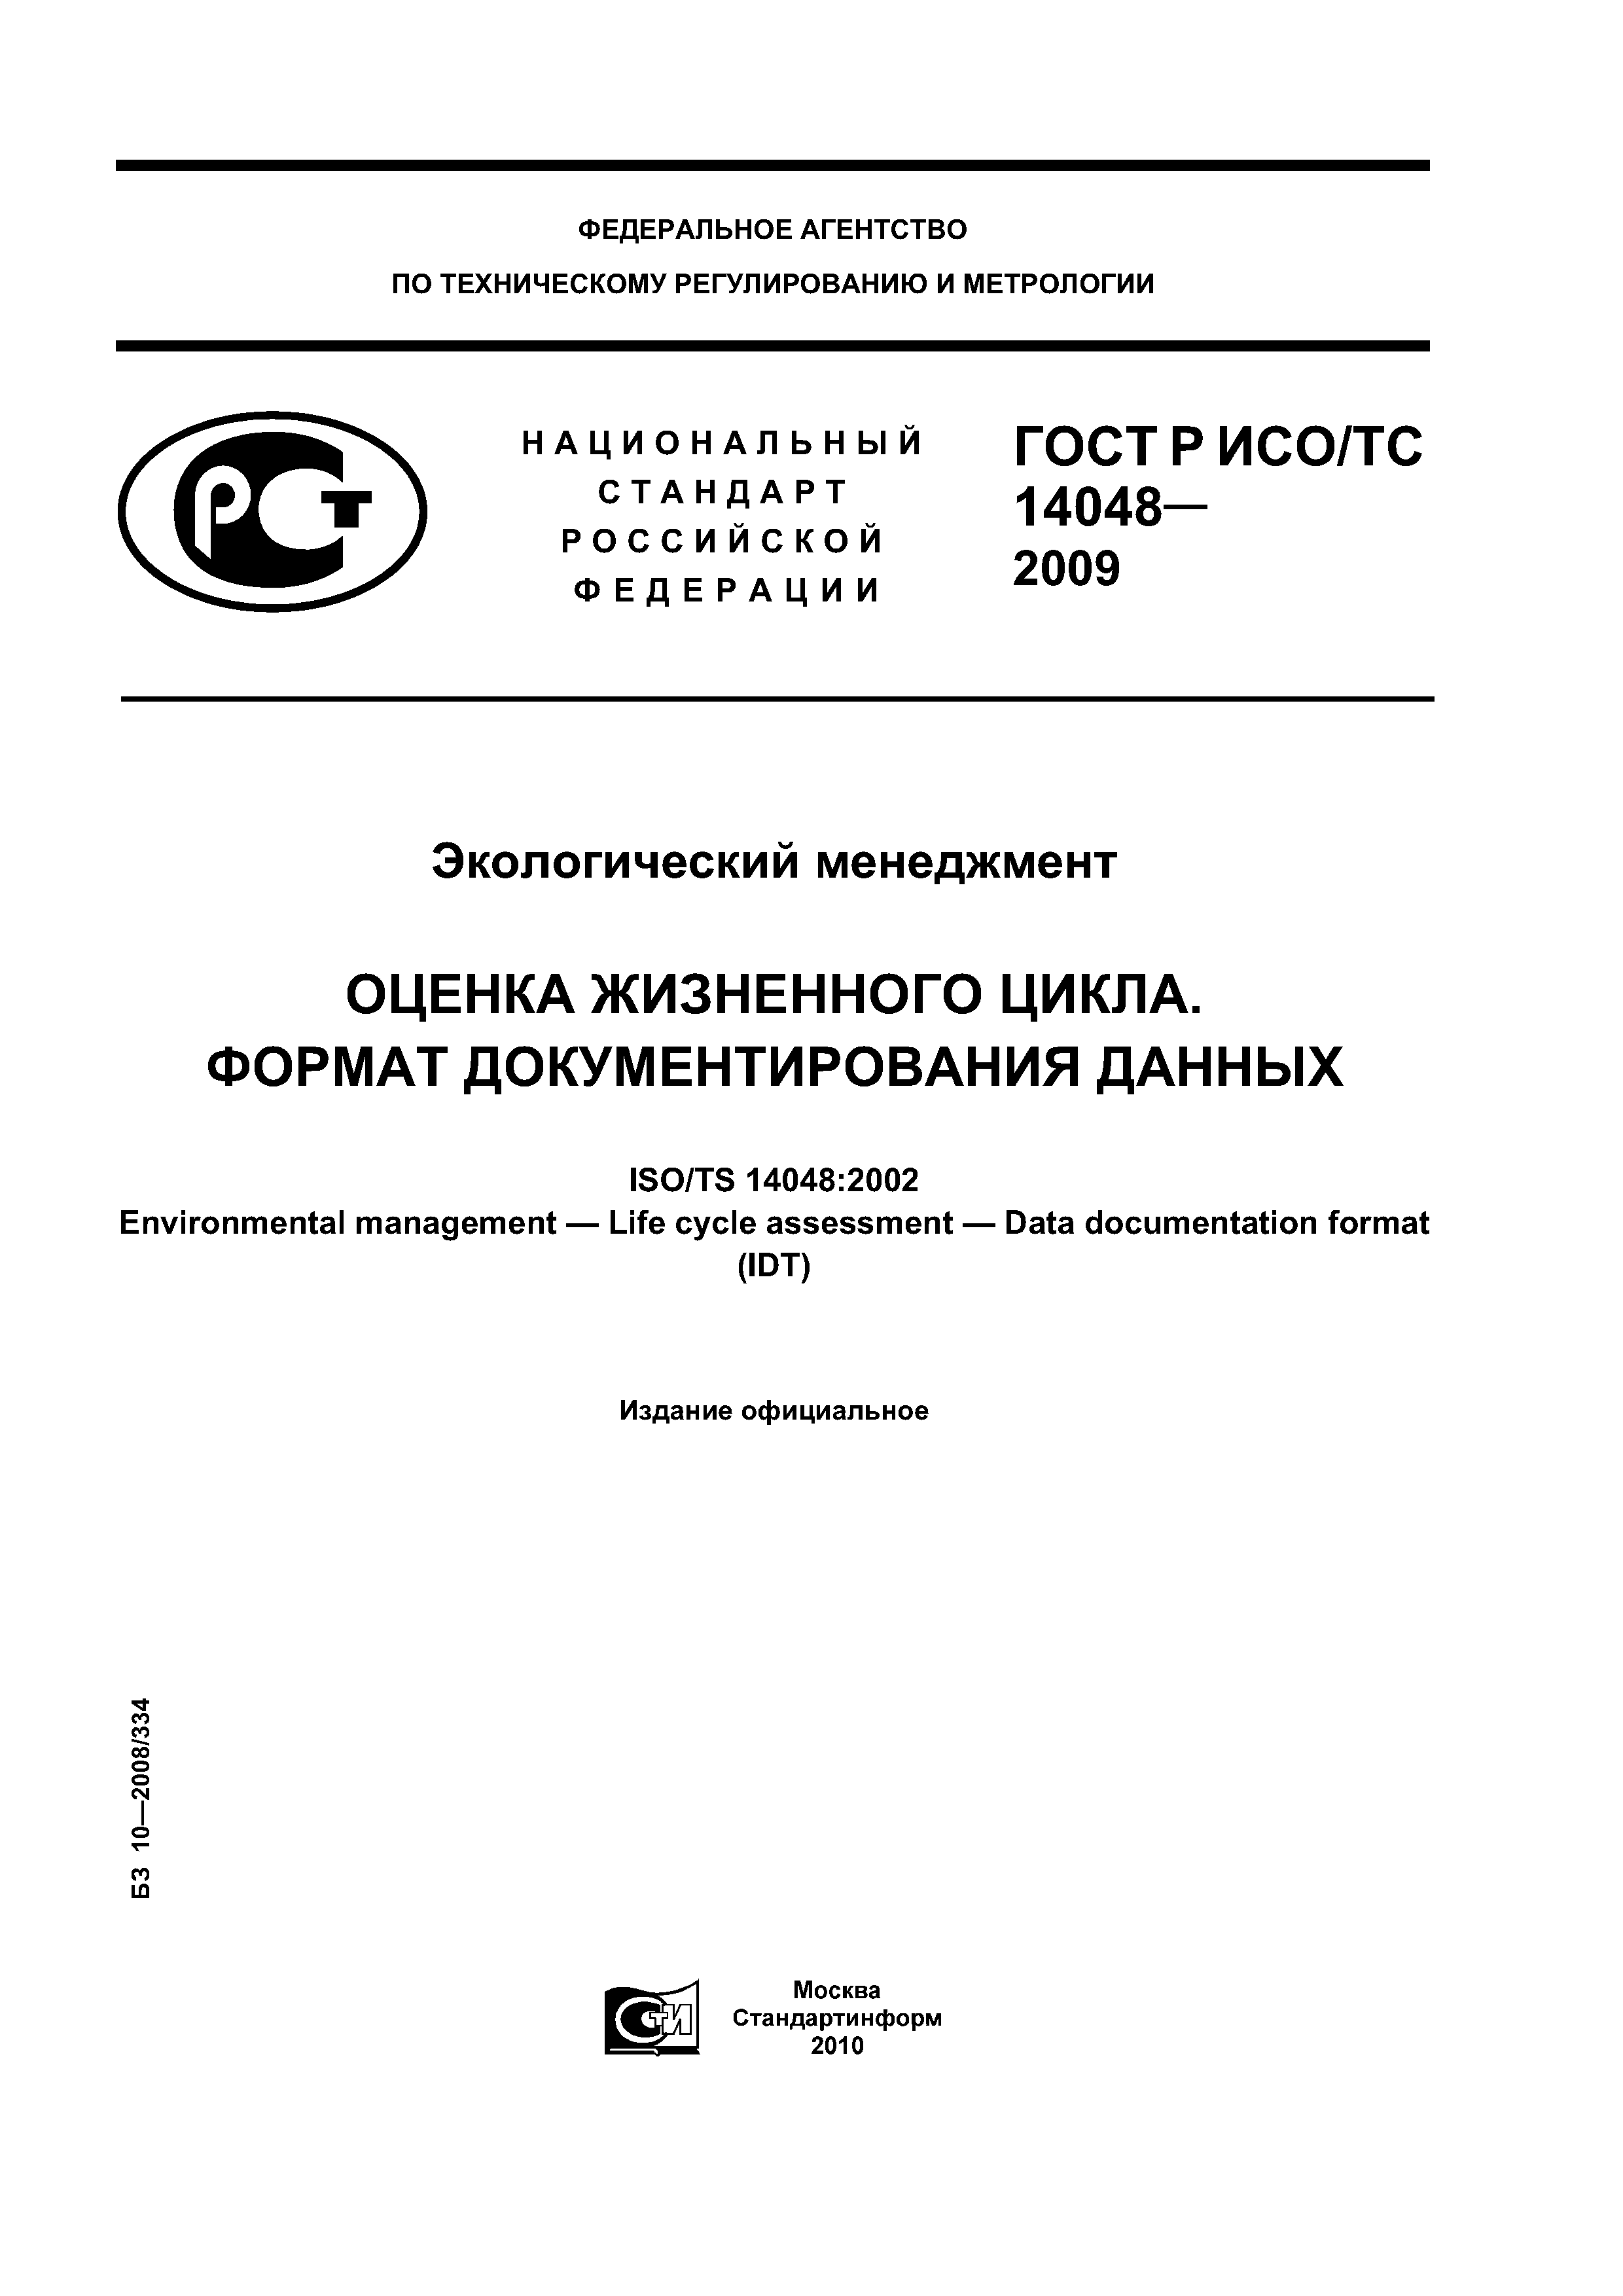 ГОСТ Р ИСО/ТС 14048-2009